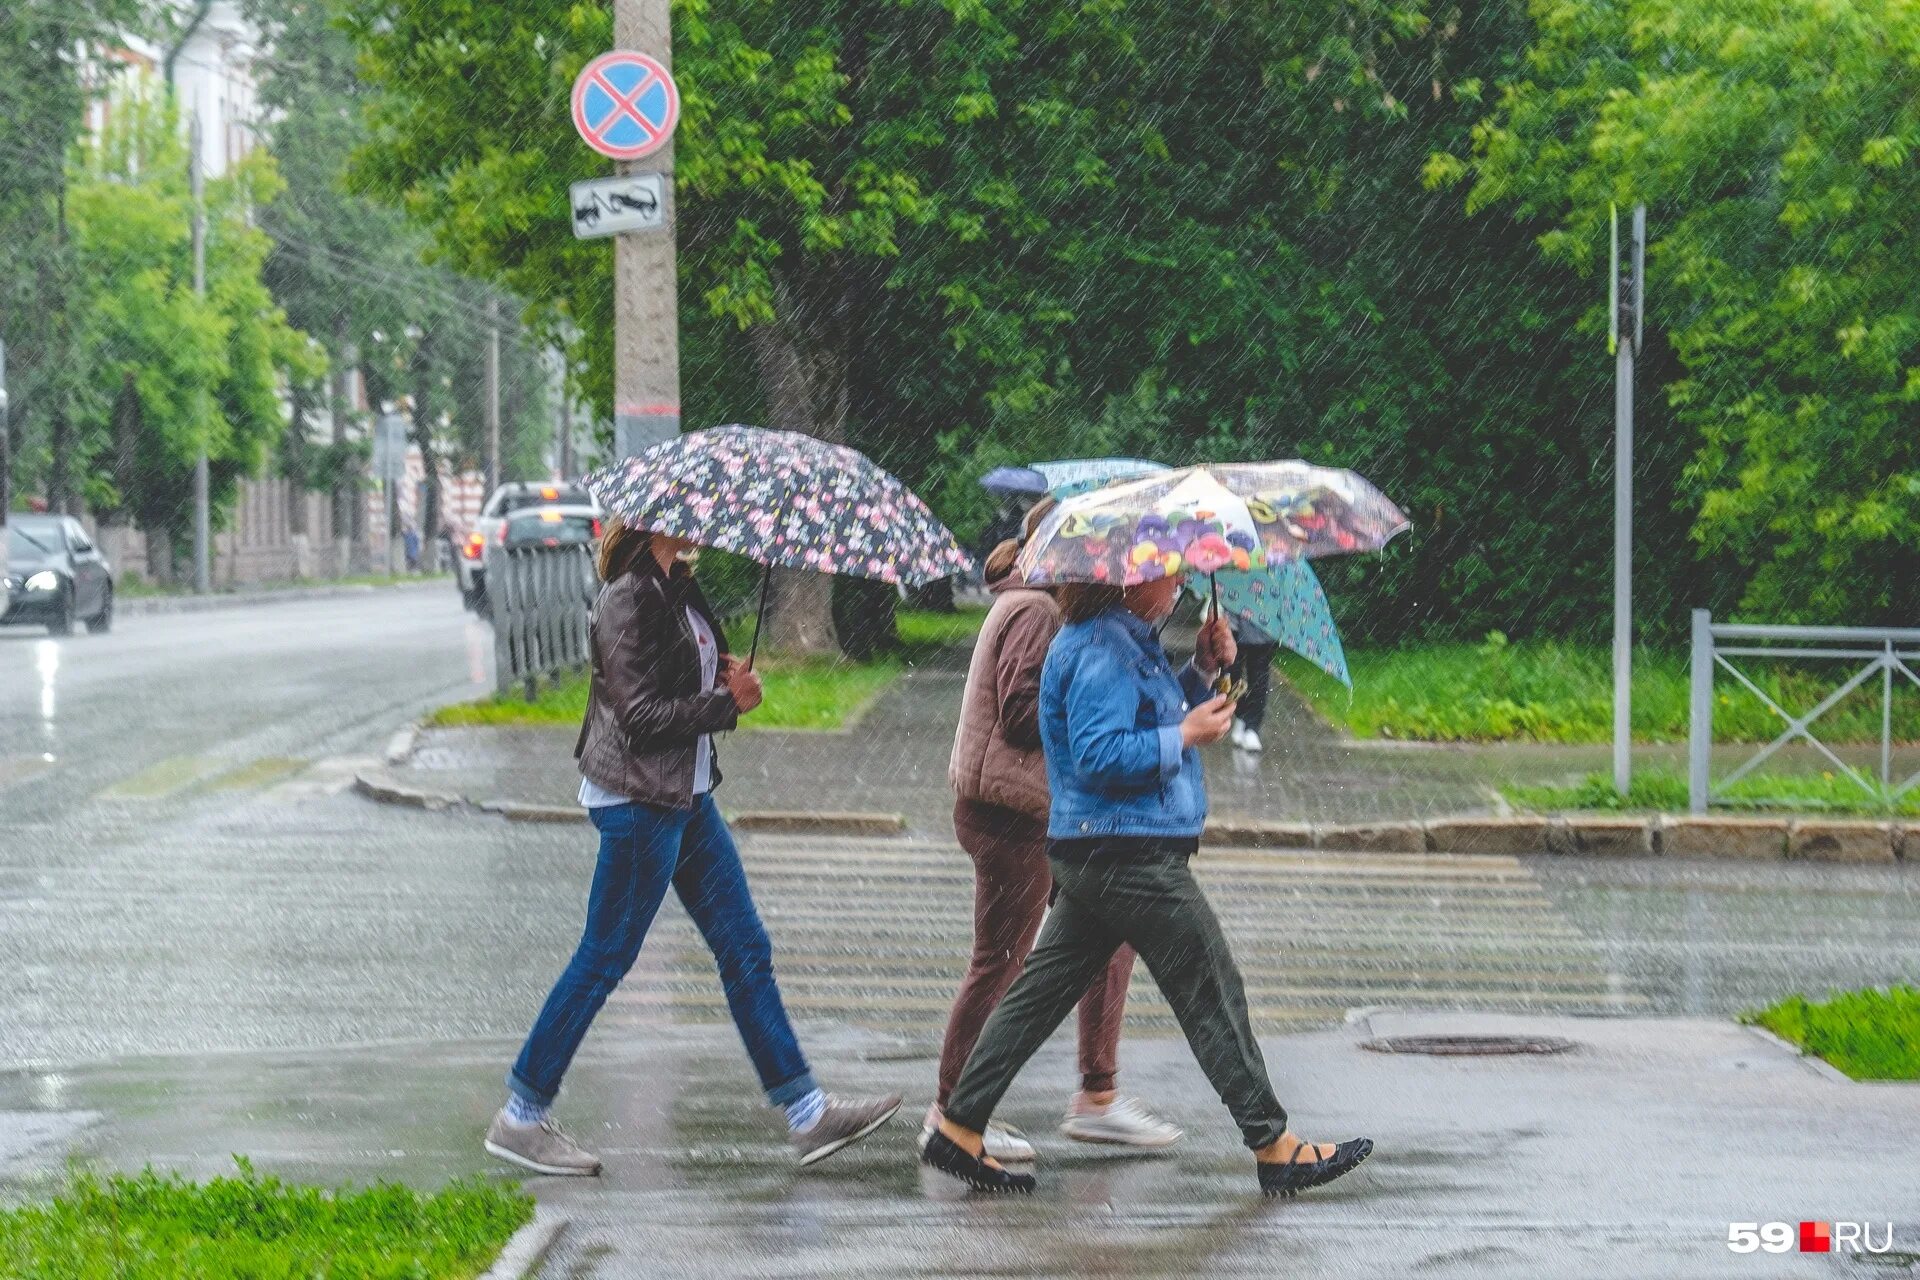 Прохладно и дождливо. Дождливая Пермь. Лето похолодание. Август дождь. Дождь шел уже несколько дней кряду мелкий